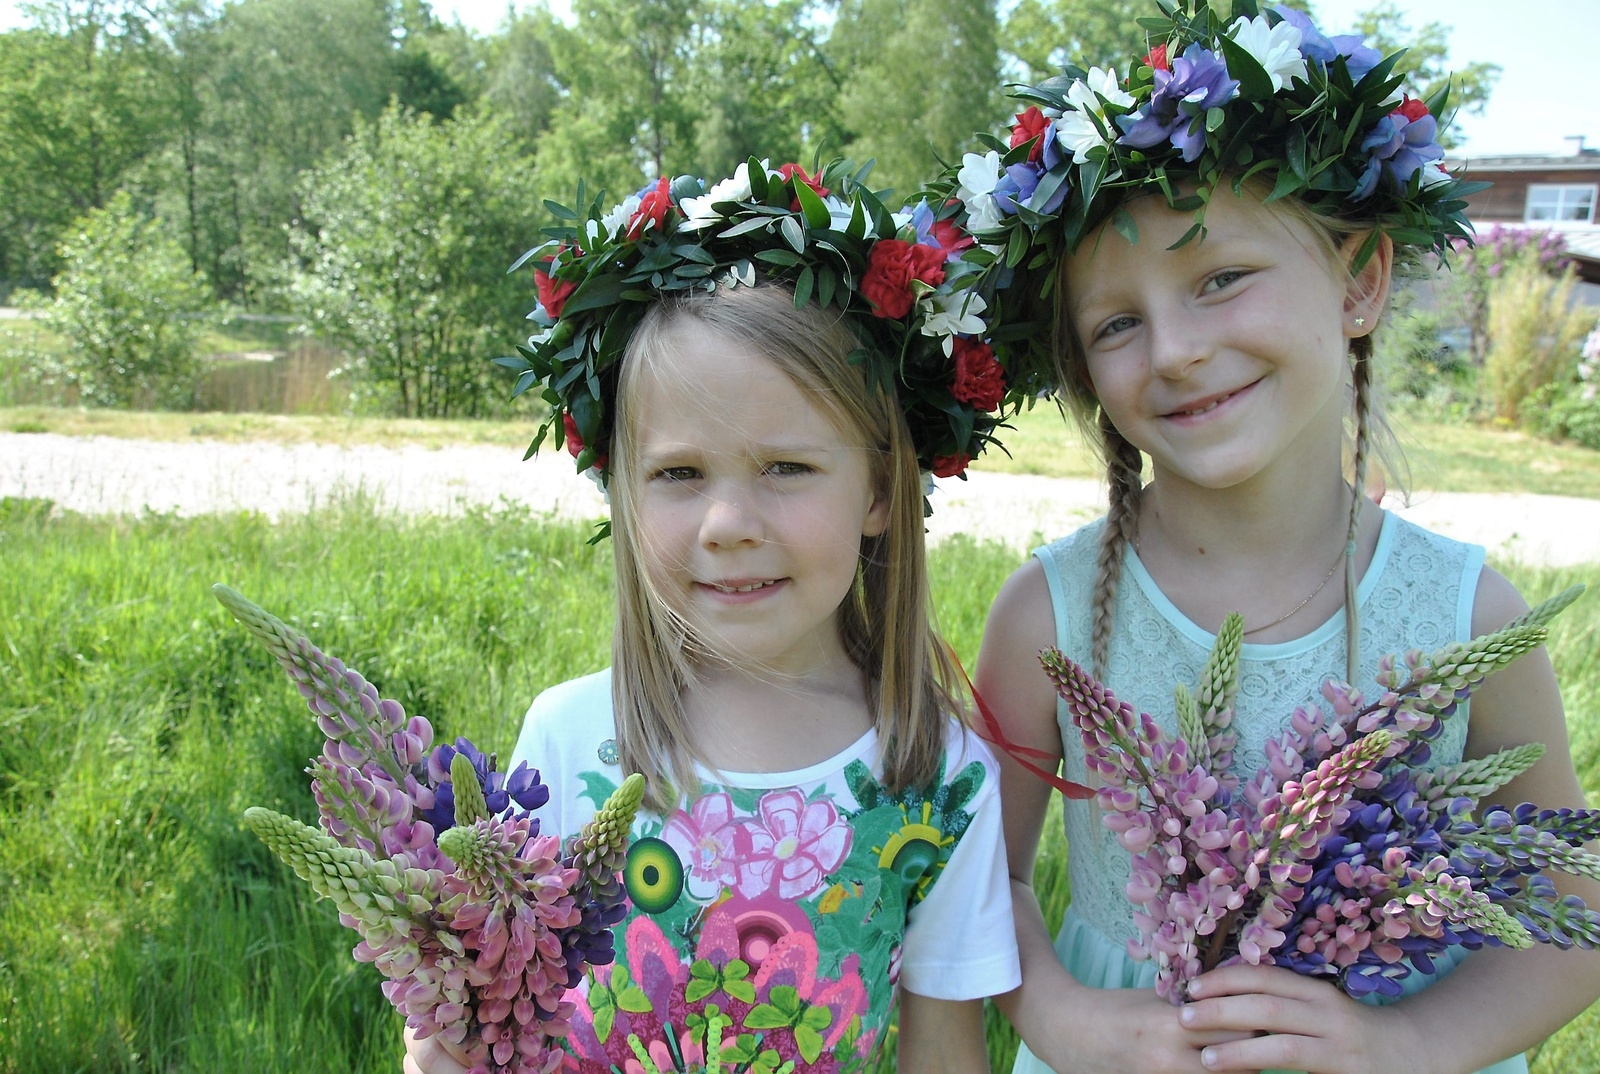 Med blommor i famnen och blommor i håret så känns det härligt med sommarlov! Kompisarna Isabelle och Lovis hittar på mycket roligt tillsammans när de träffas.
Foto: Marie Strömberg Andersson